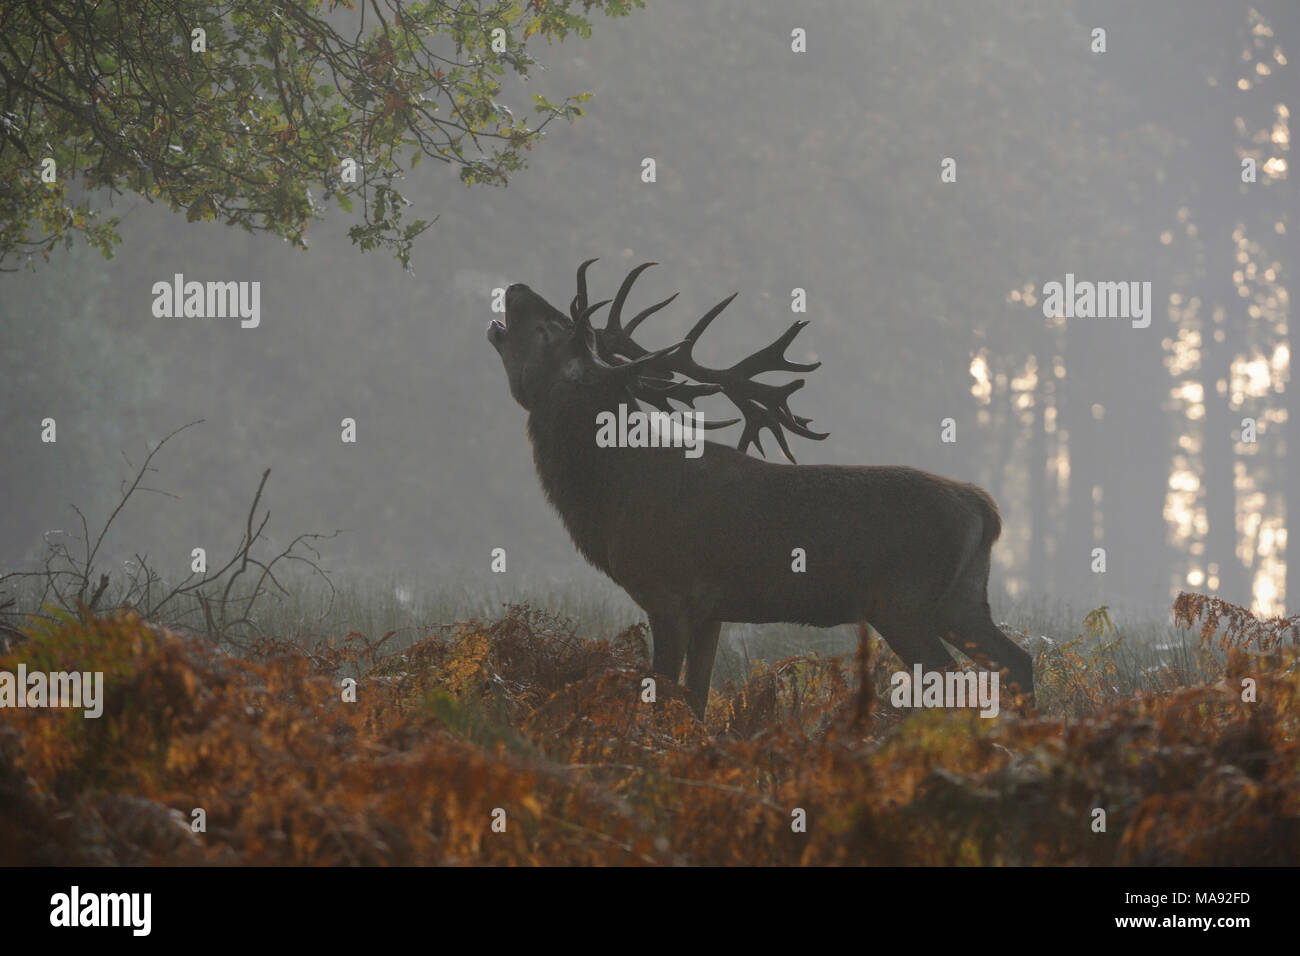 / Rothirsch ciervo rojo (Cervus elaphus), Stag, rugiendo en una limpieza profunda en el bosque, resoplando su aliento, ánimo otoñal, la primera niebla de la mañana, Europa. Foto de stock